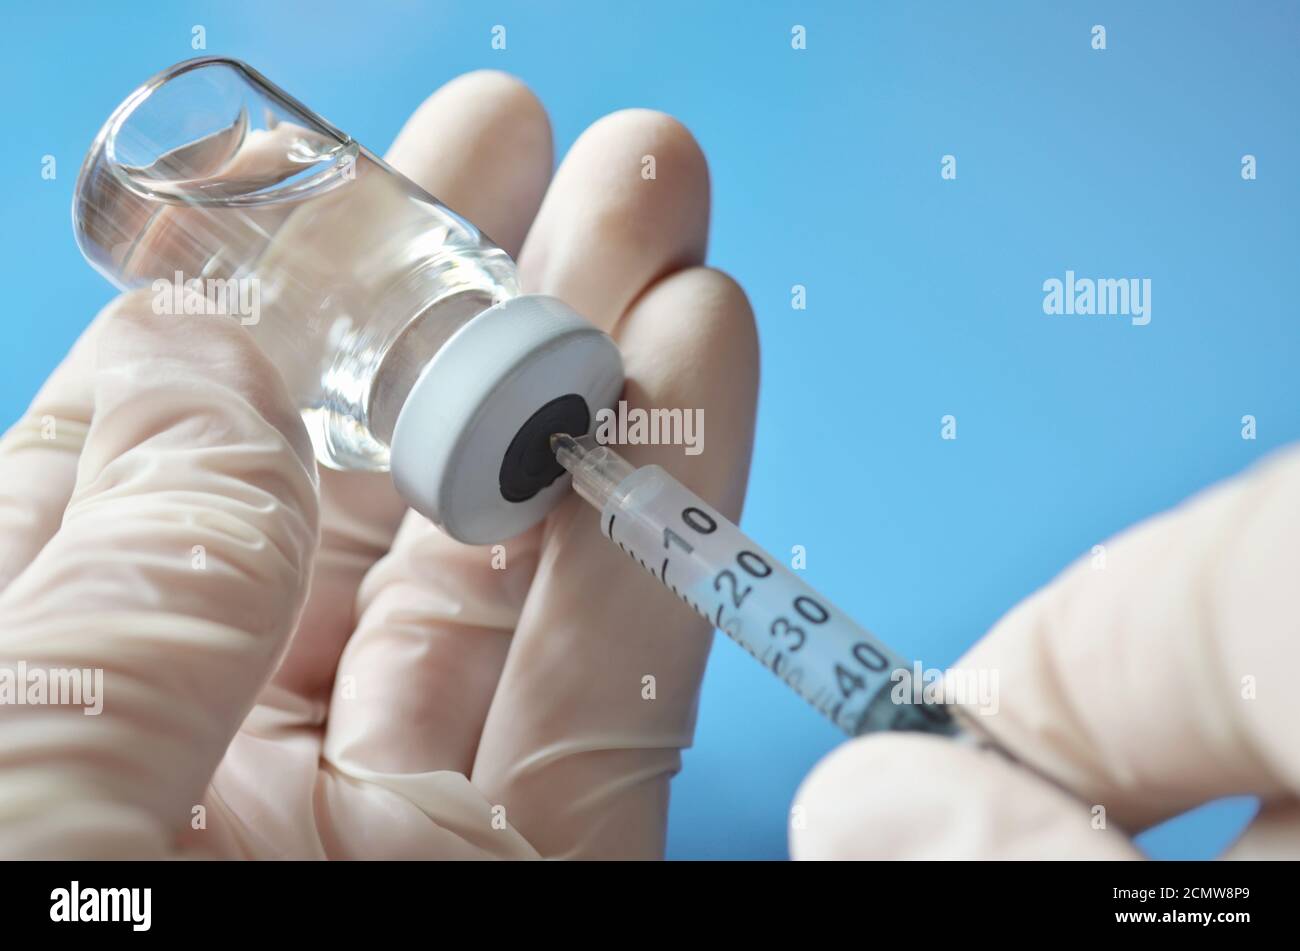 Professionnel de la santé dans des gants en caoutchouc extraire une dose de médicament d'un flacon médical à l'aide d'une seringue jetable sur fond bleu clair. Banque D'Images